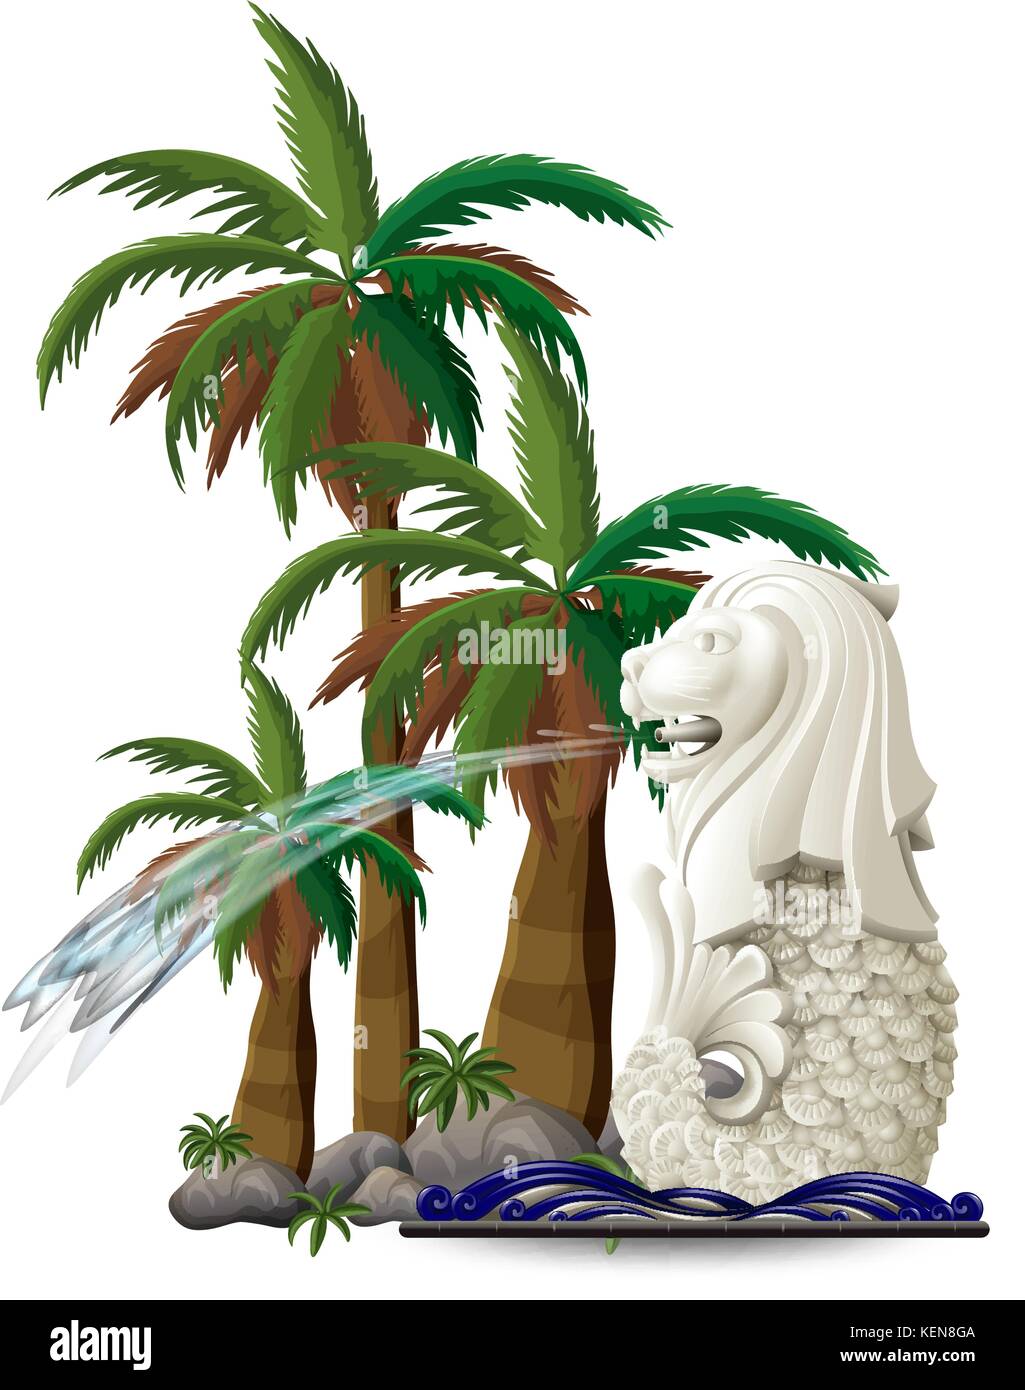 Illustration de la statue de merlion près du palmiers sur fond blanc Illustration de Vecteur